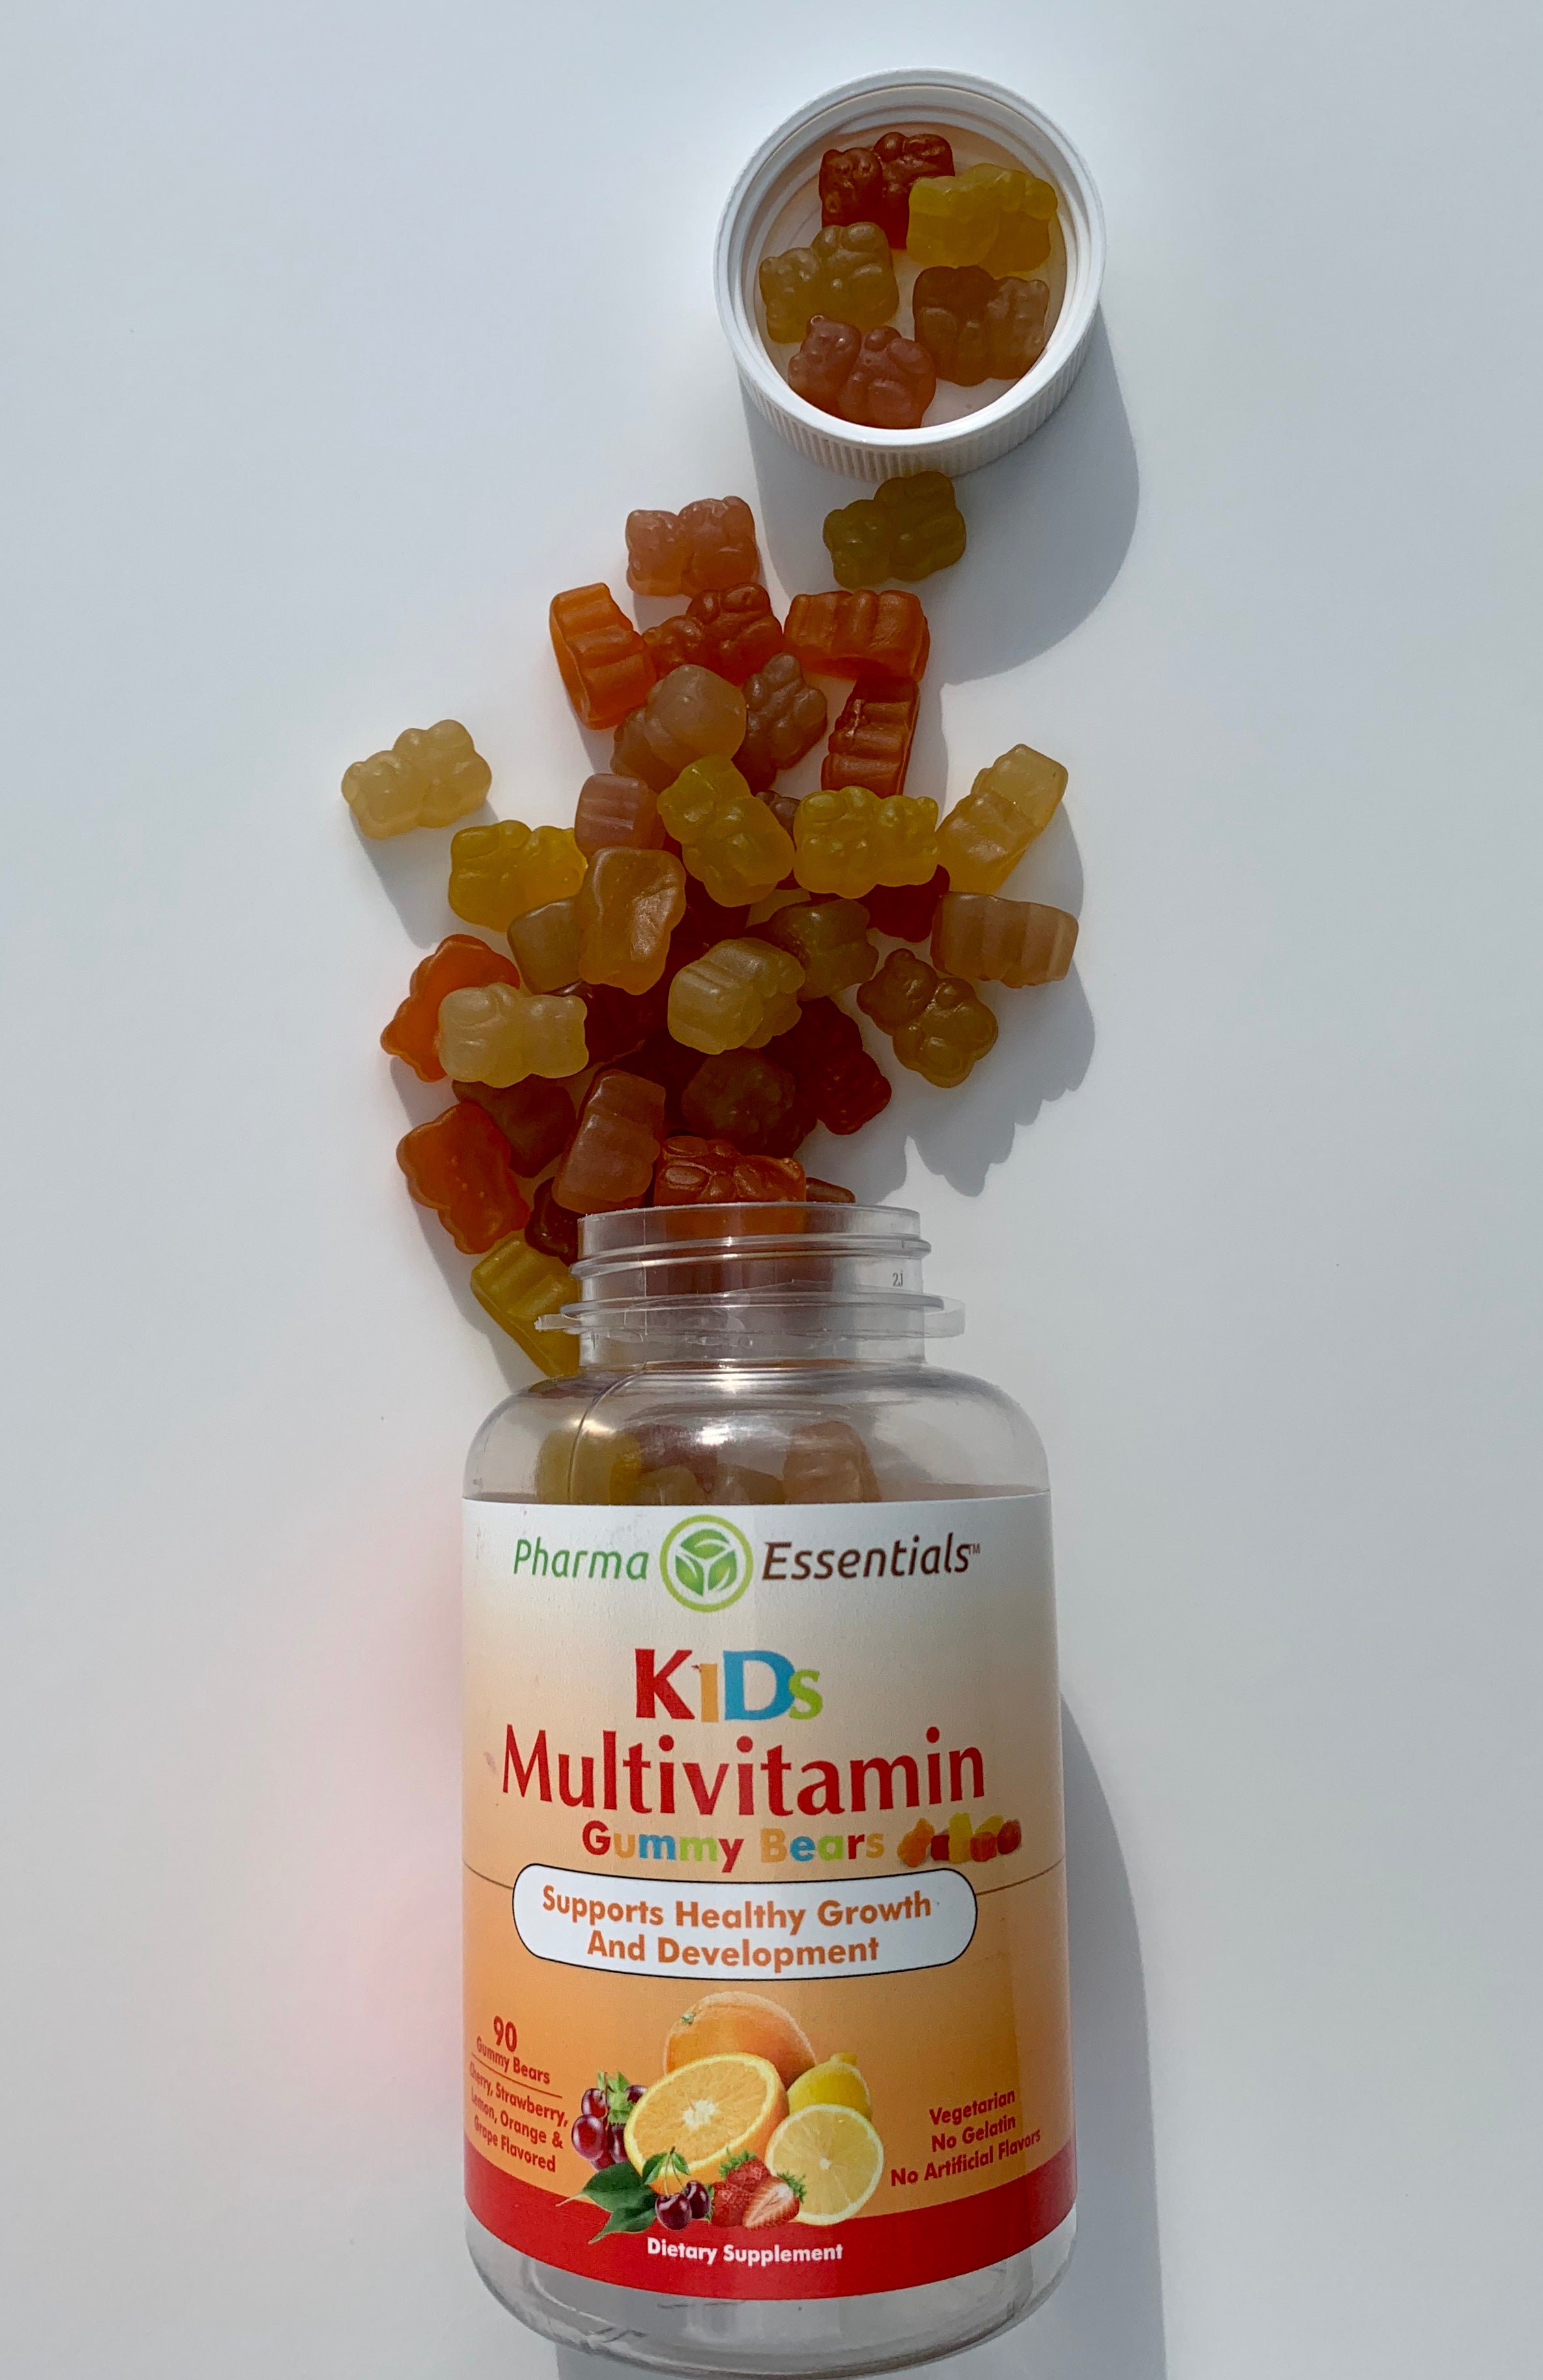 Kids multivitamin gelatin-free gummies 